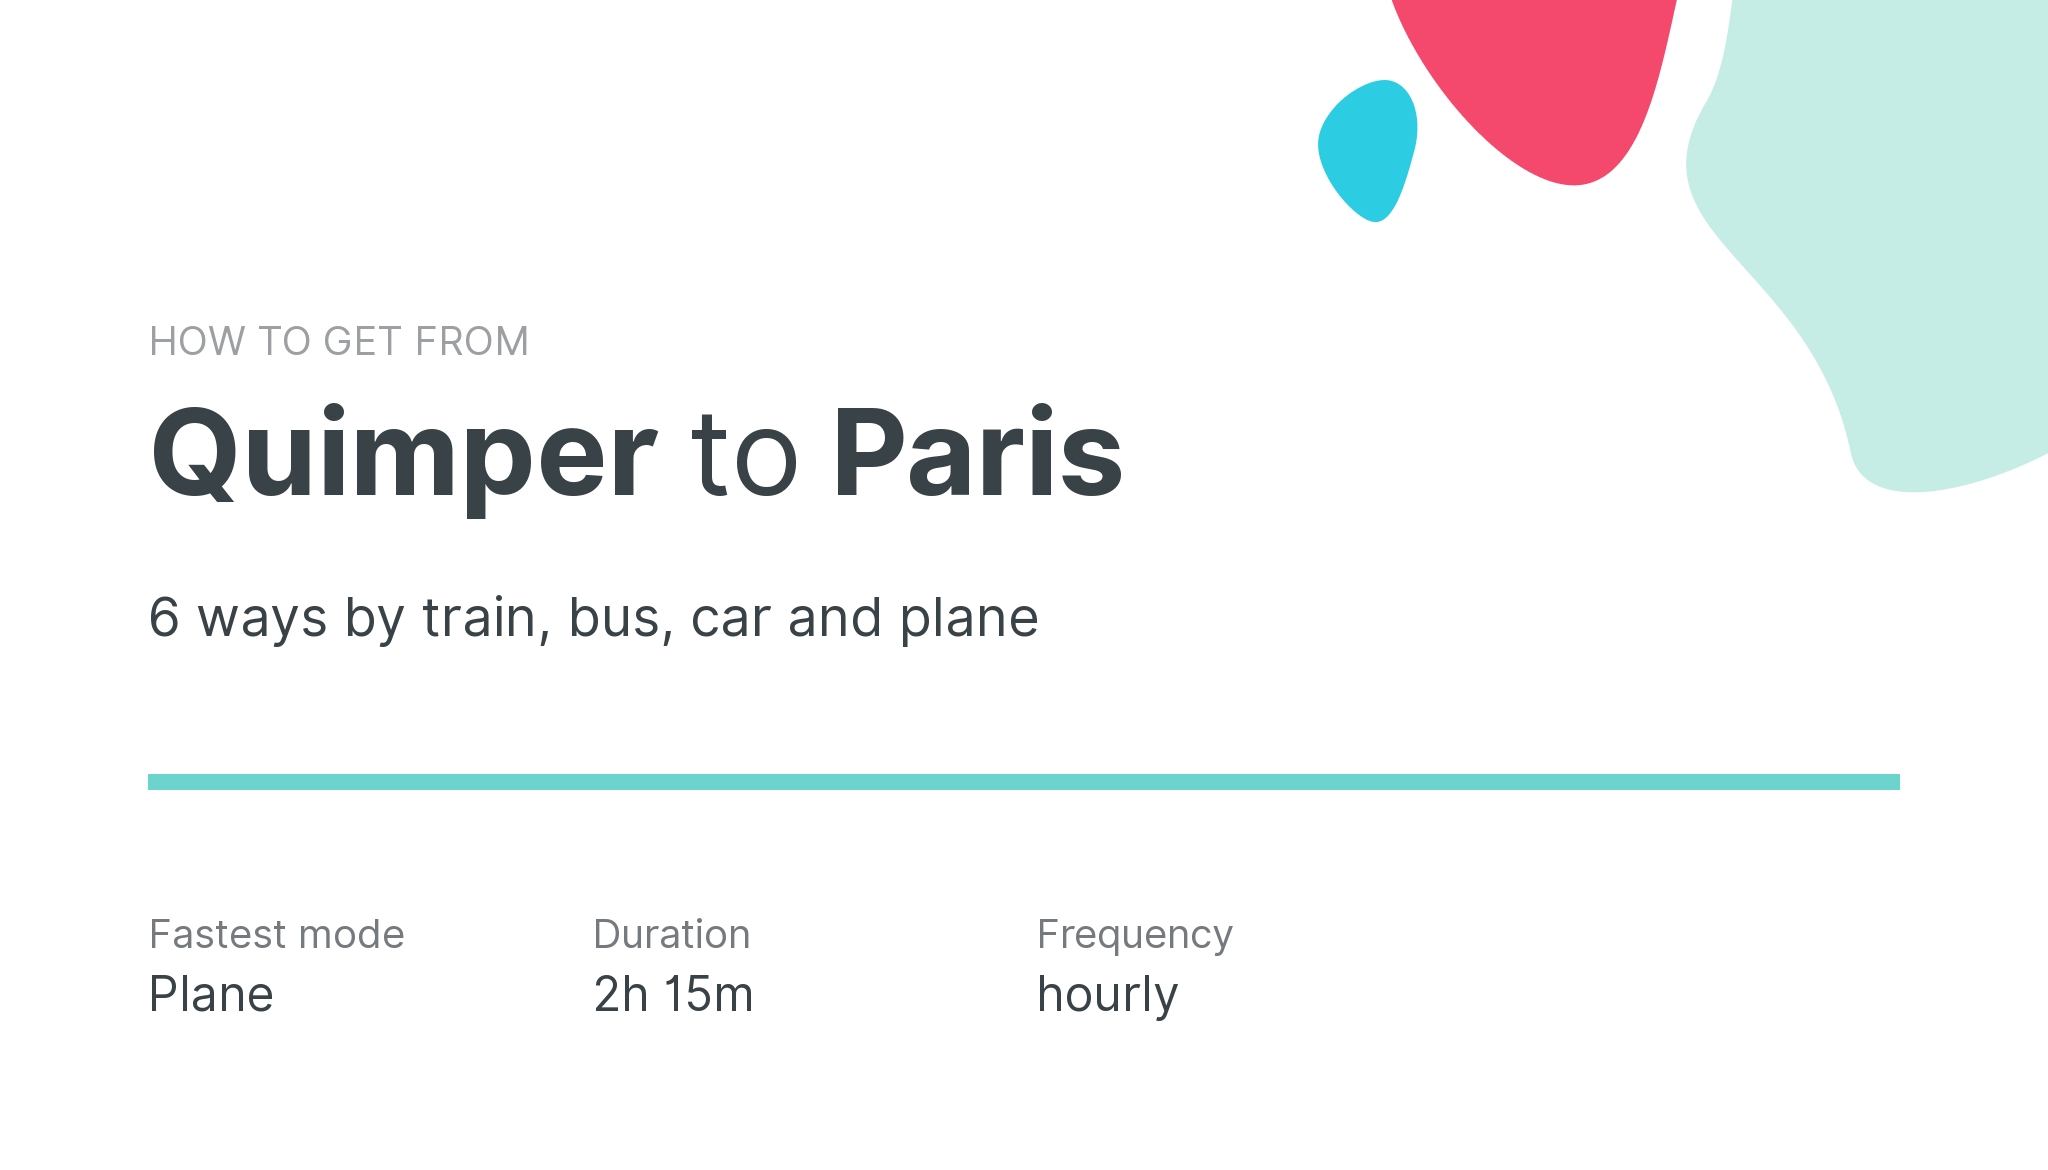 How do I get from Quimper to Paris